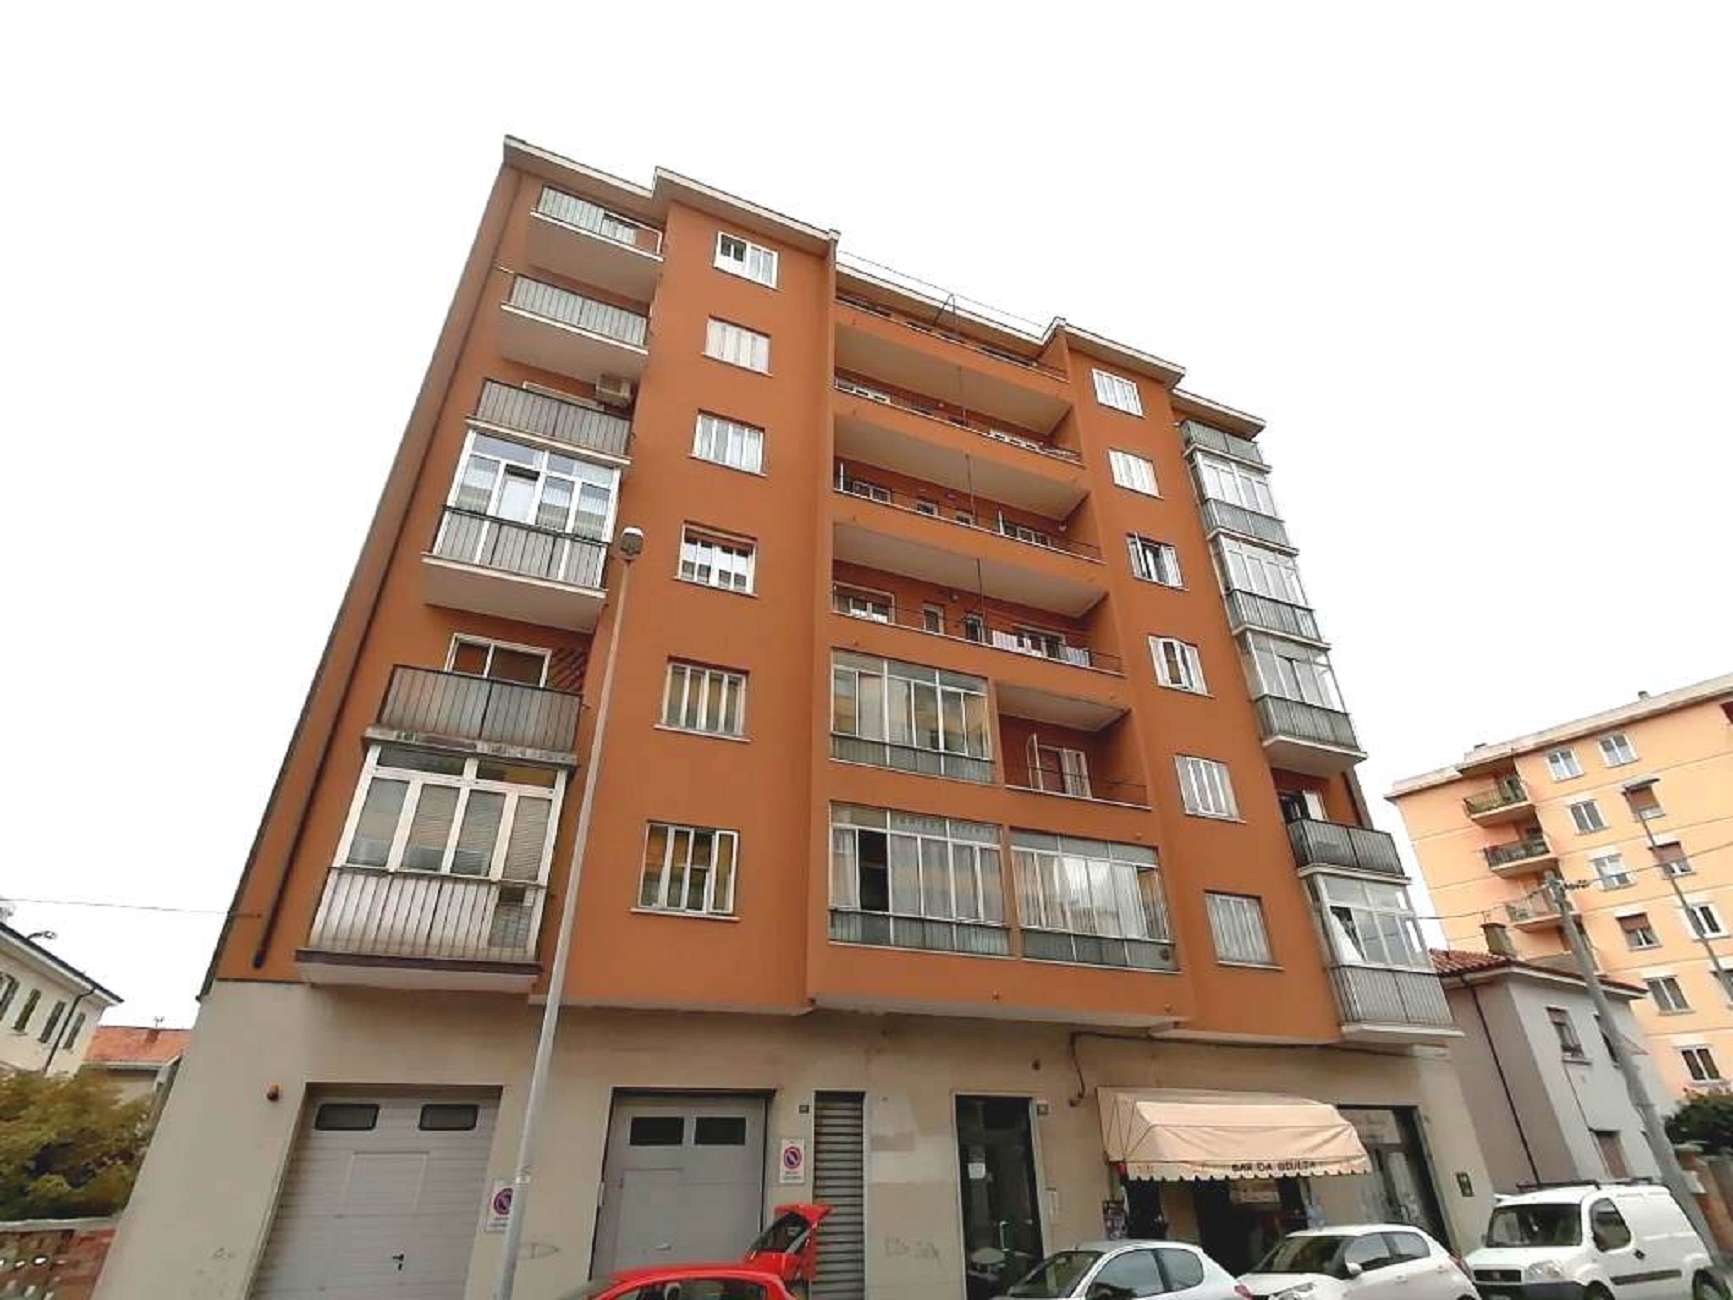 Via dell'Istria piano alto - Appartamento Soggiorno + 2 ...